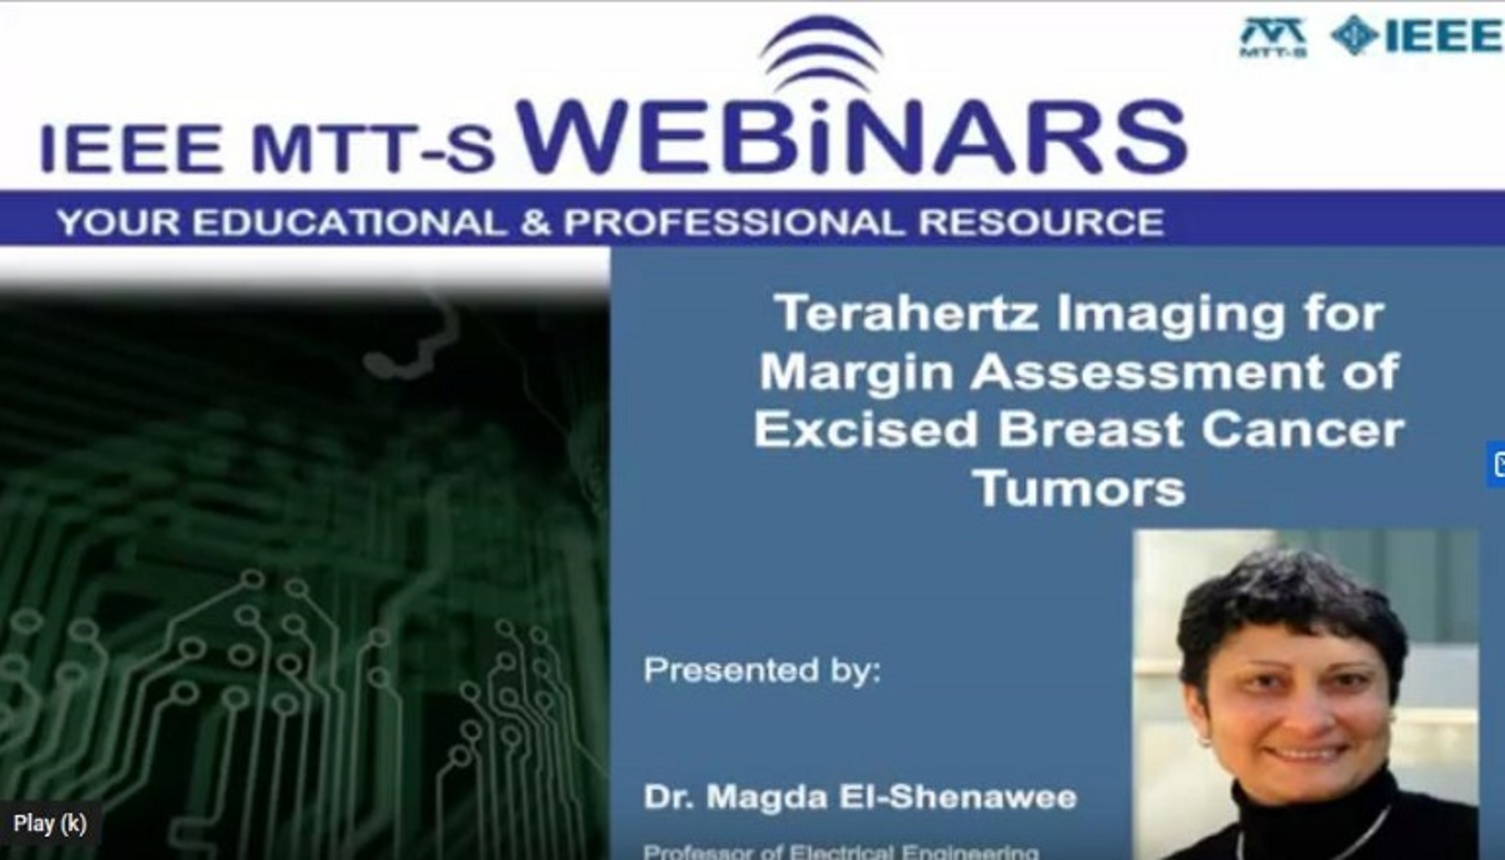 Terahertz Imaging for Margin Assessment of Excised Breast Cancer Tumors Video